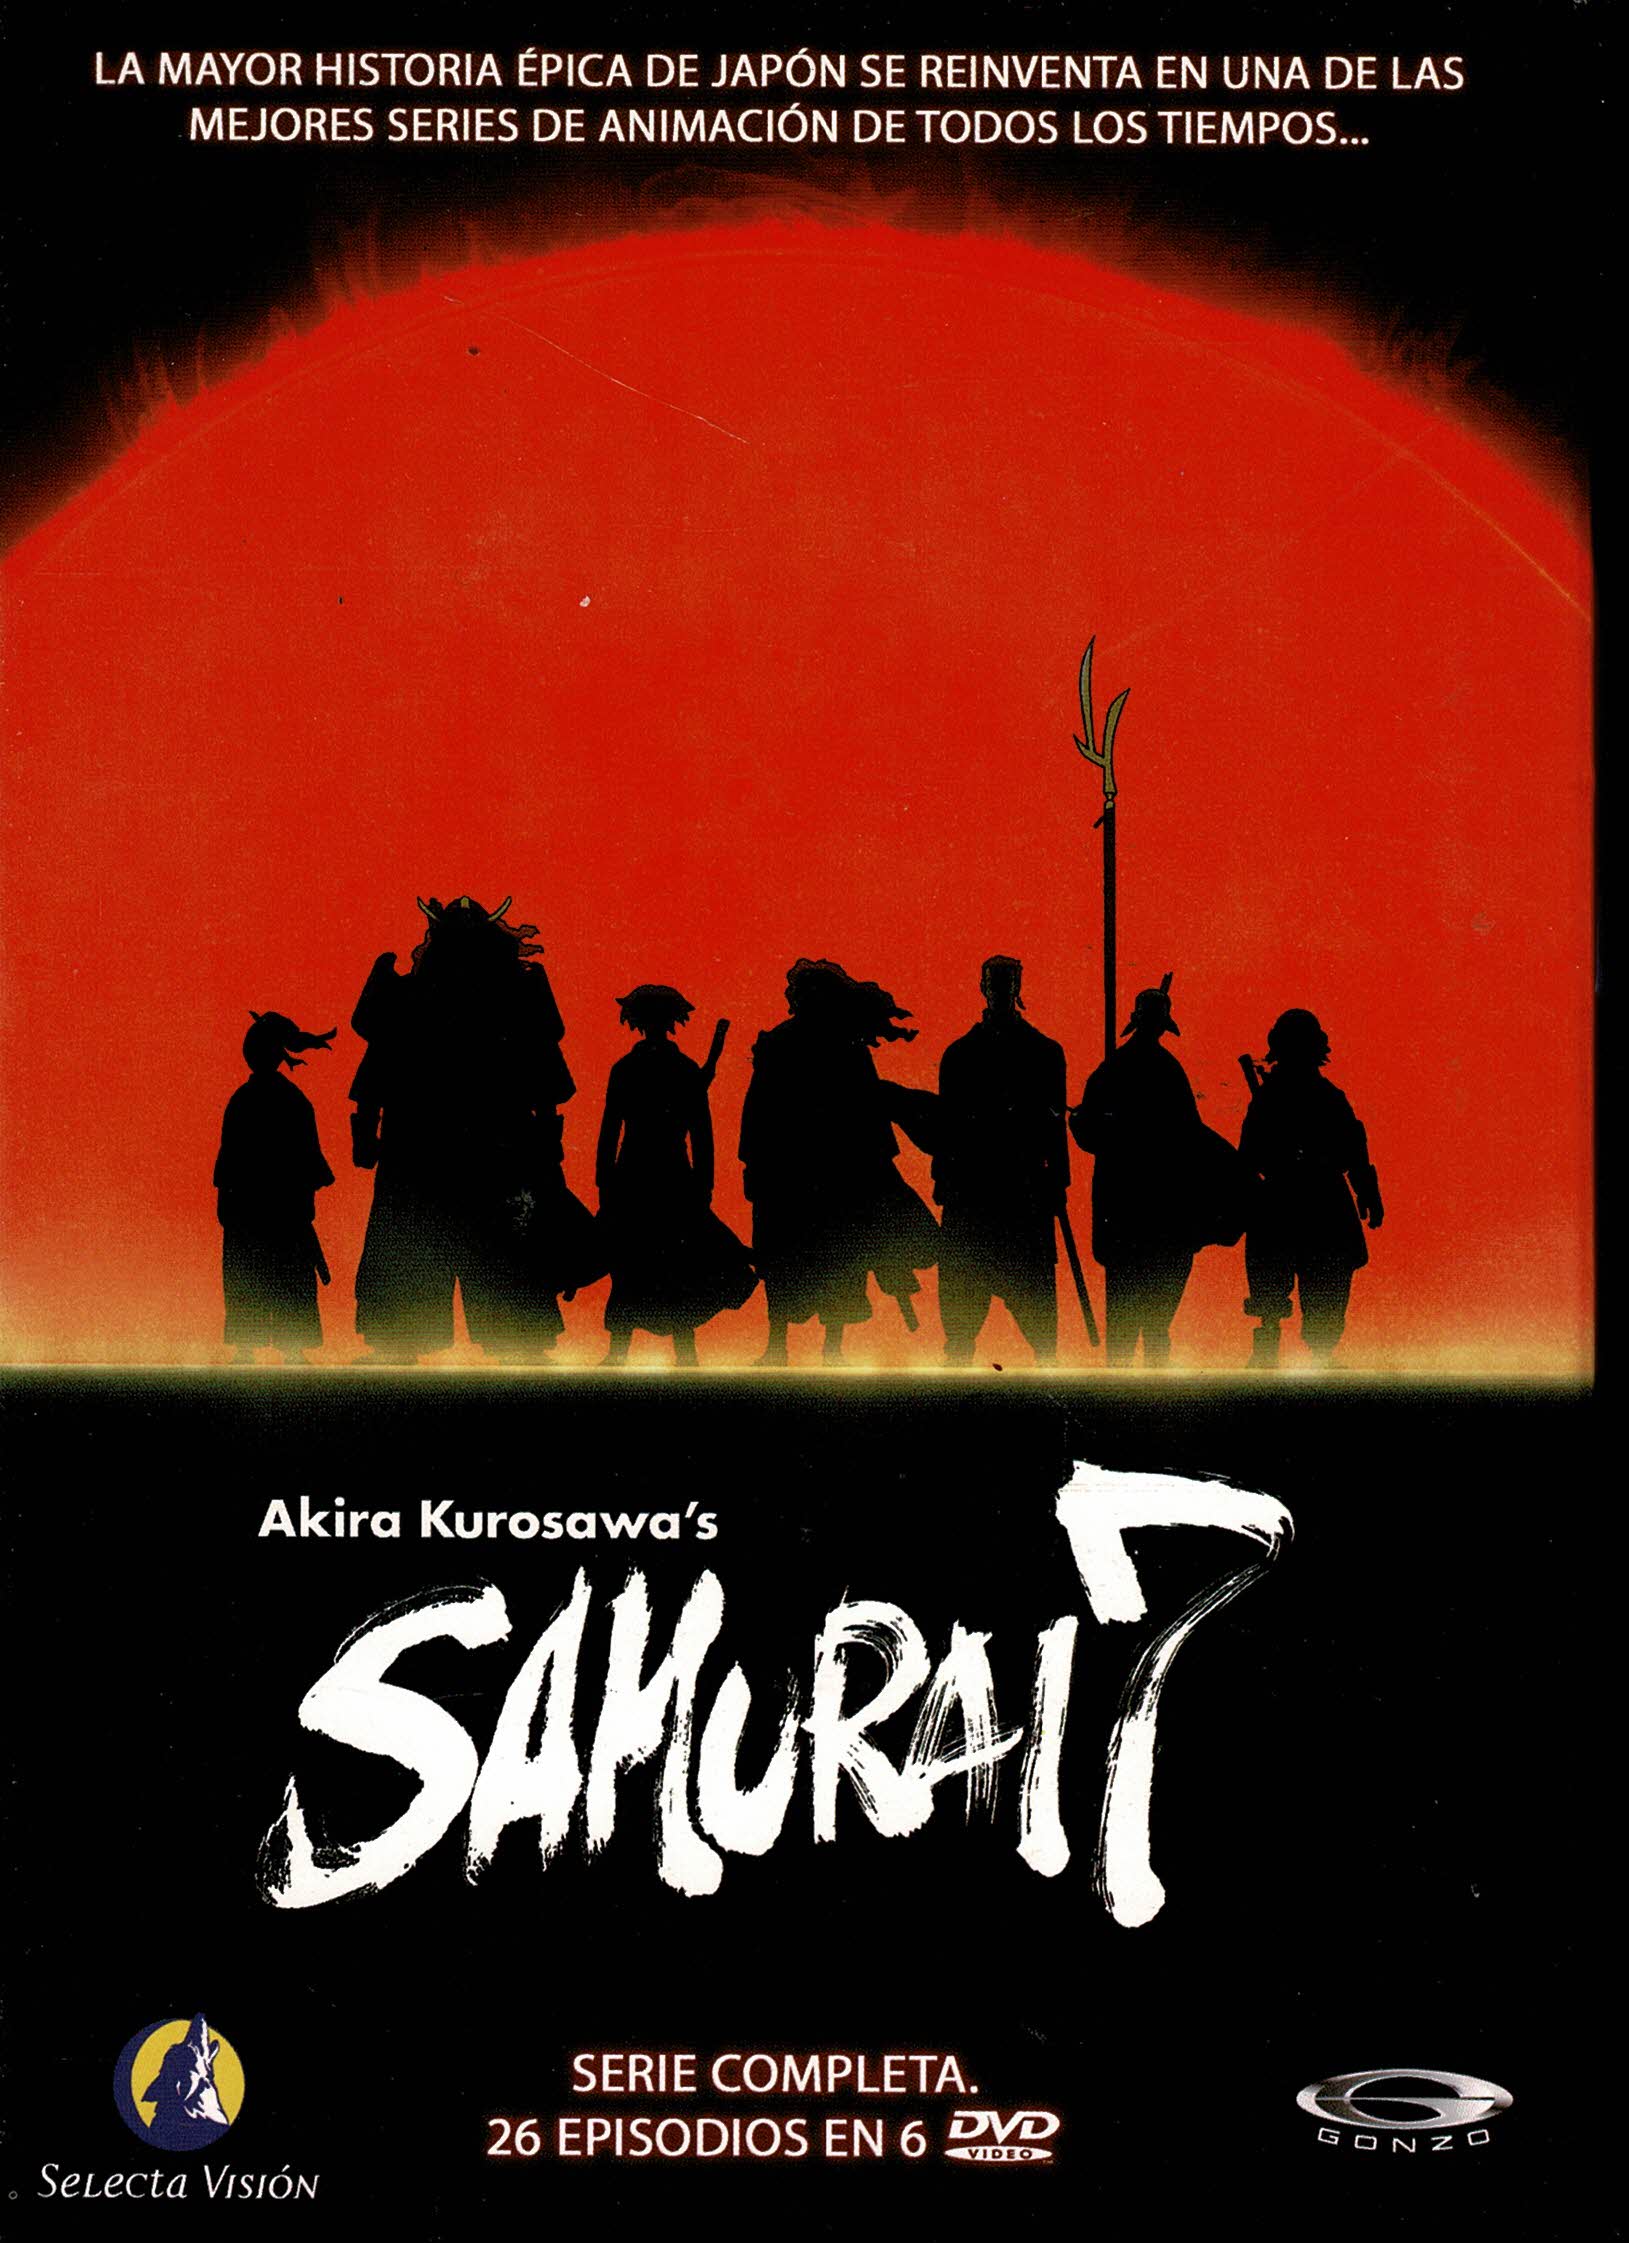 Samurai 7  Serie Completa 26 episodios 6 dvd